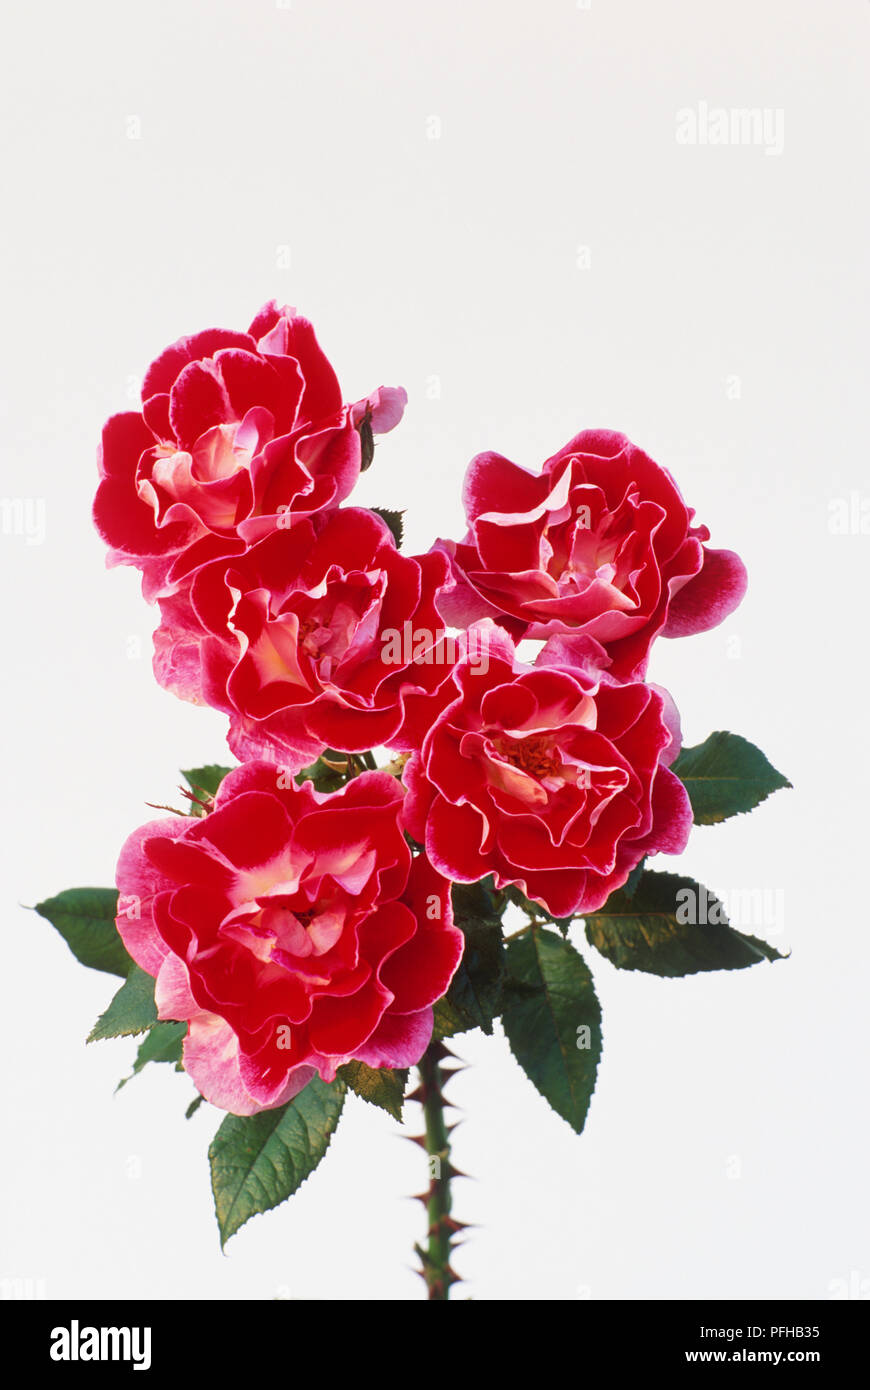 Rosa "Vecchio Master', cluster di semi-doppio, fiori a tazza con carmine-rosso Petalo interno, più pallido esterno, petali di fiori e foglie di colore verde scuro Foto Stock